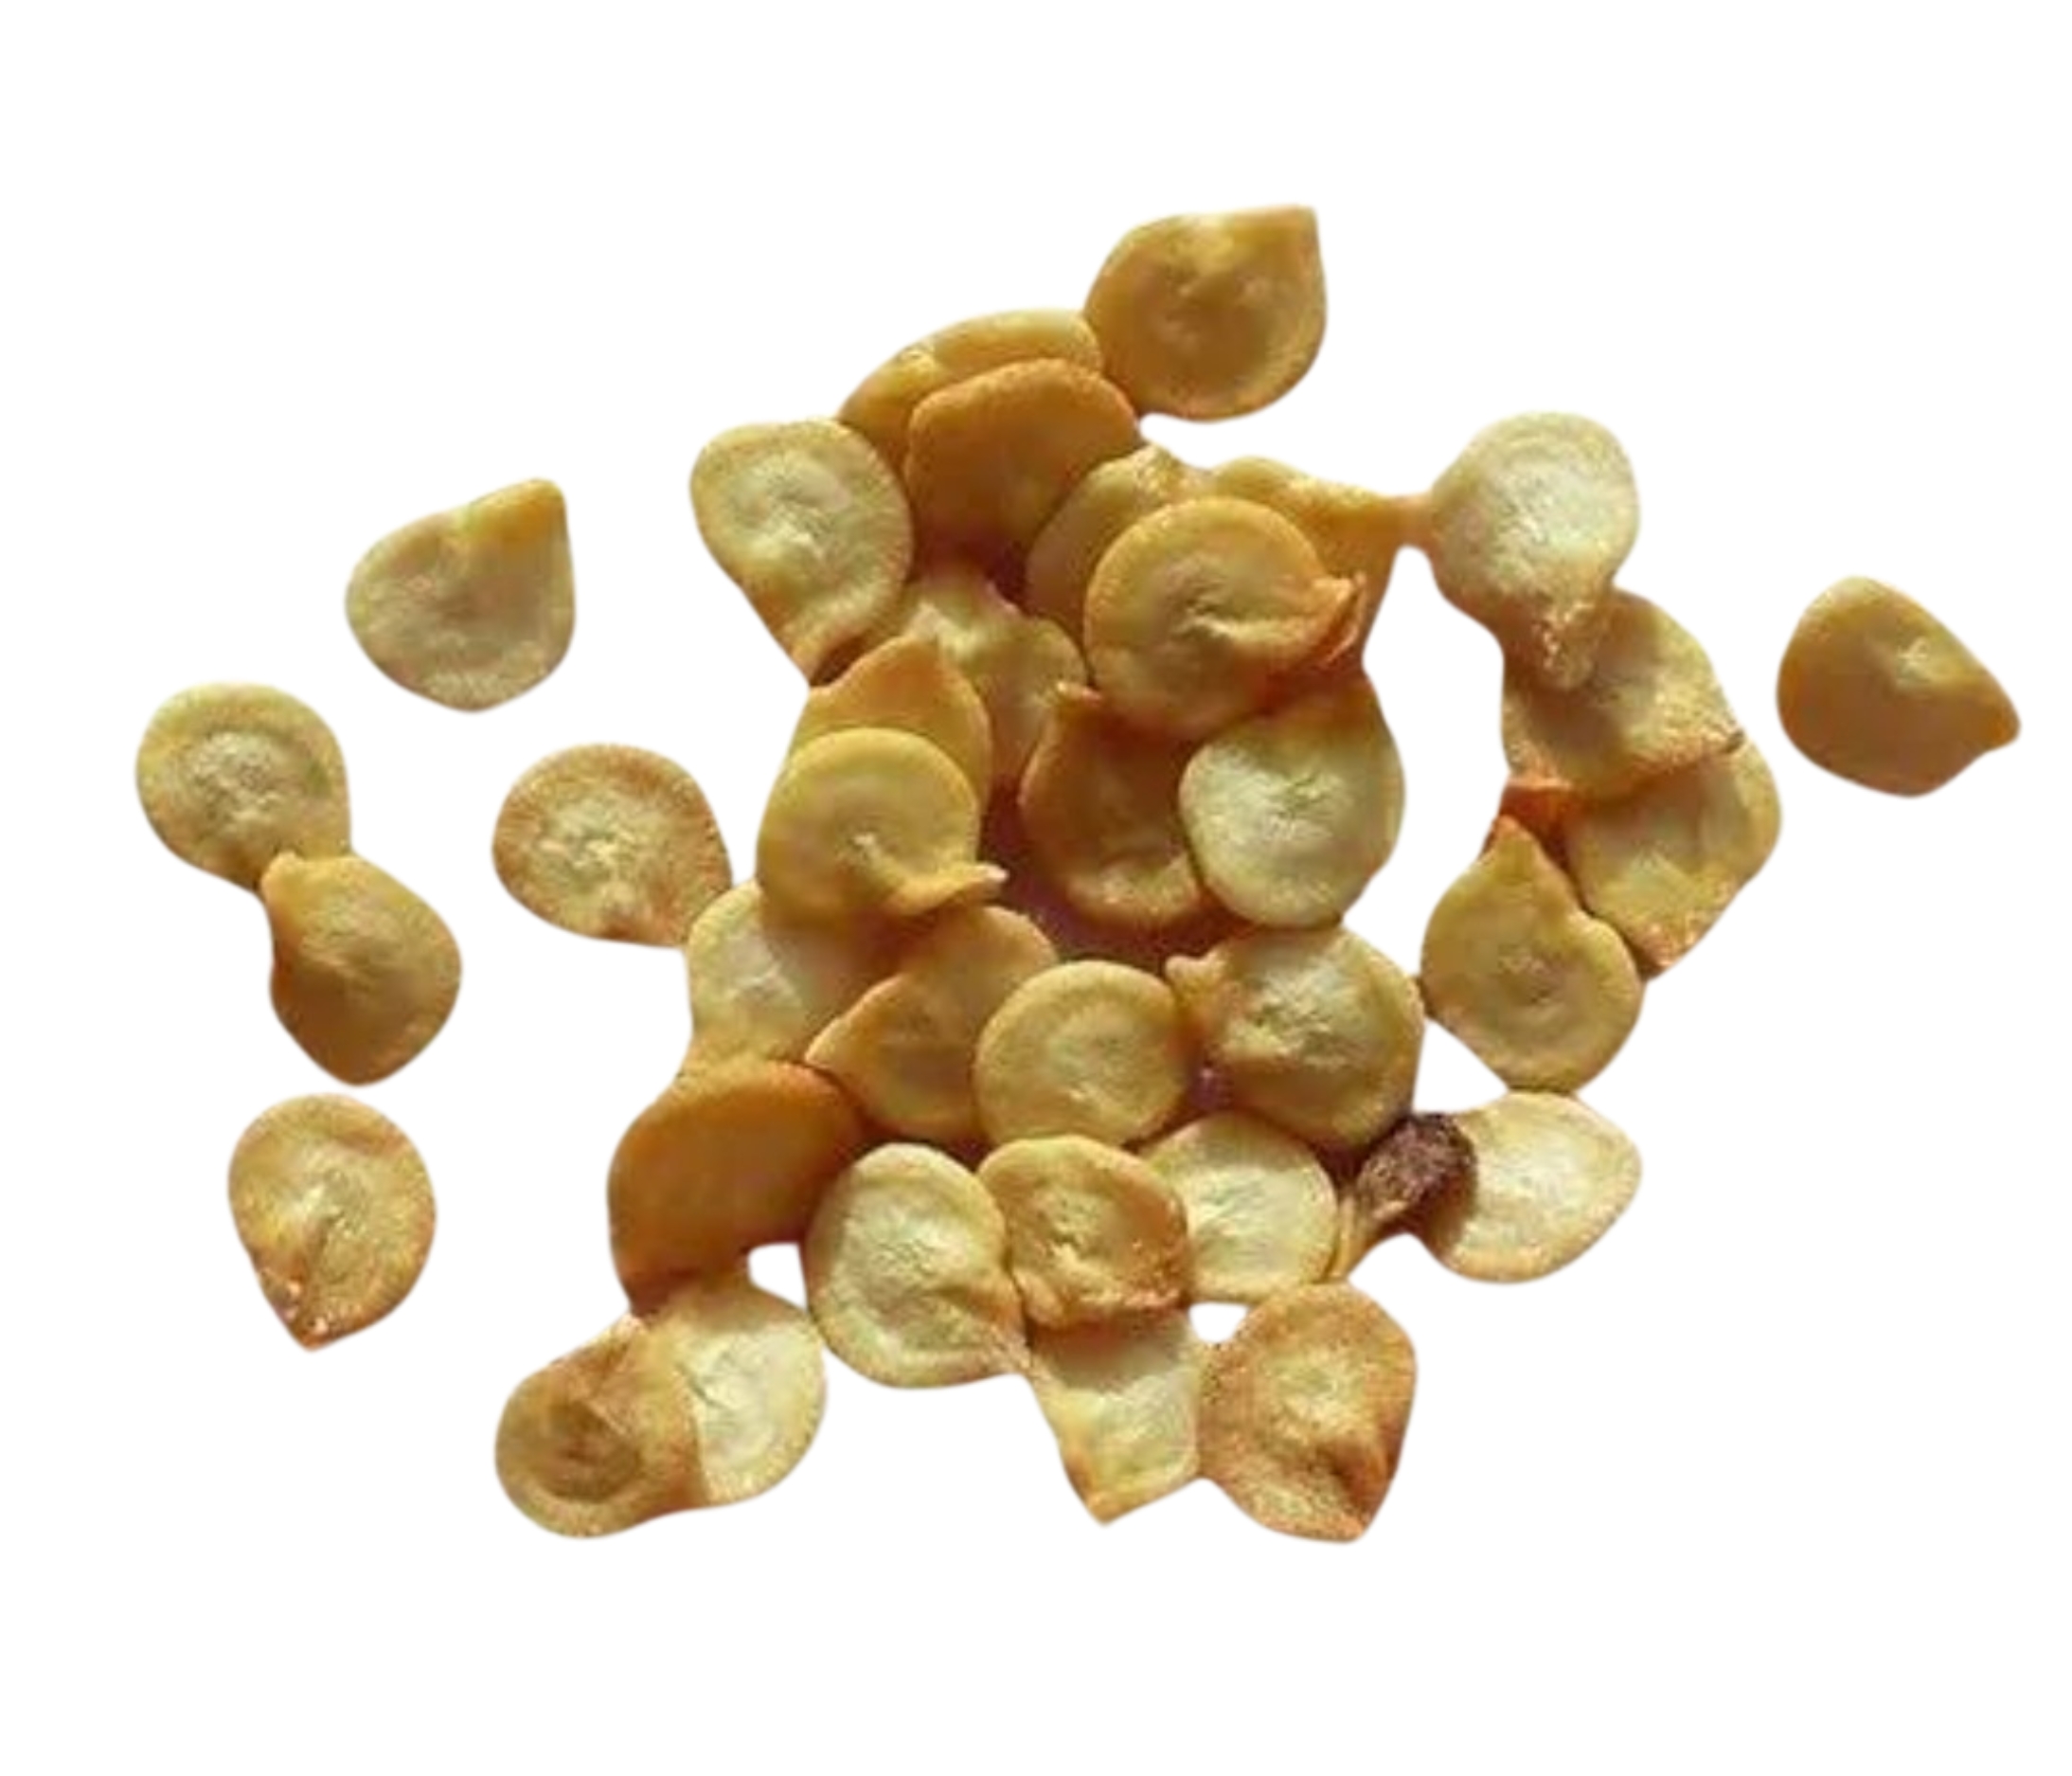 Capsicum Or Orange Horizon Seeds - 5 Gm